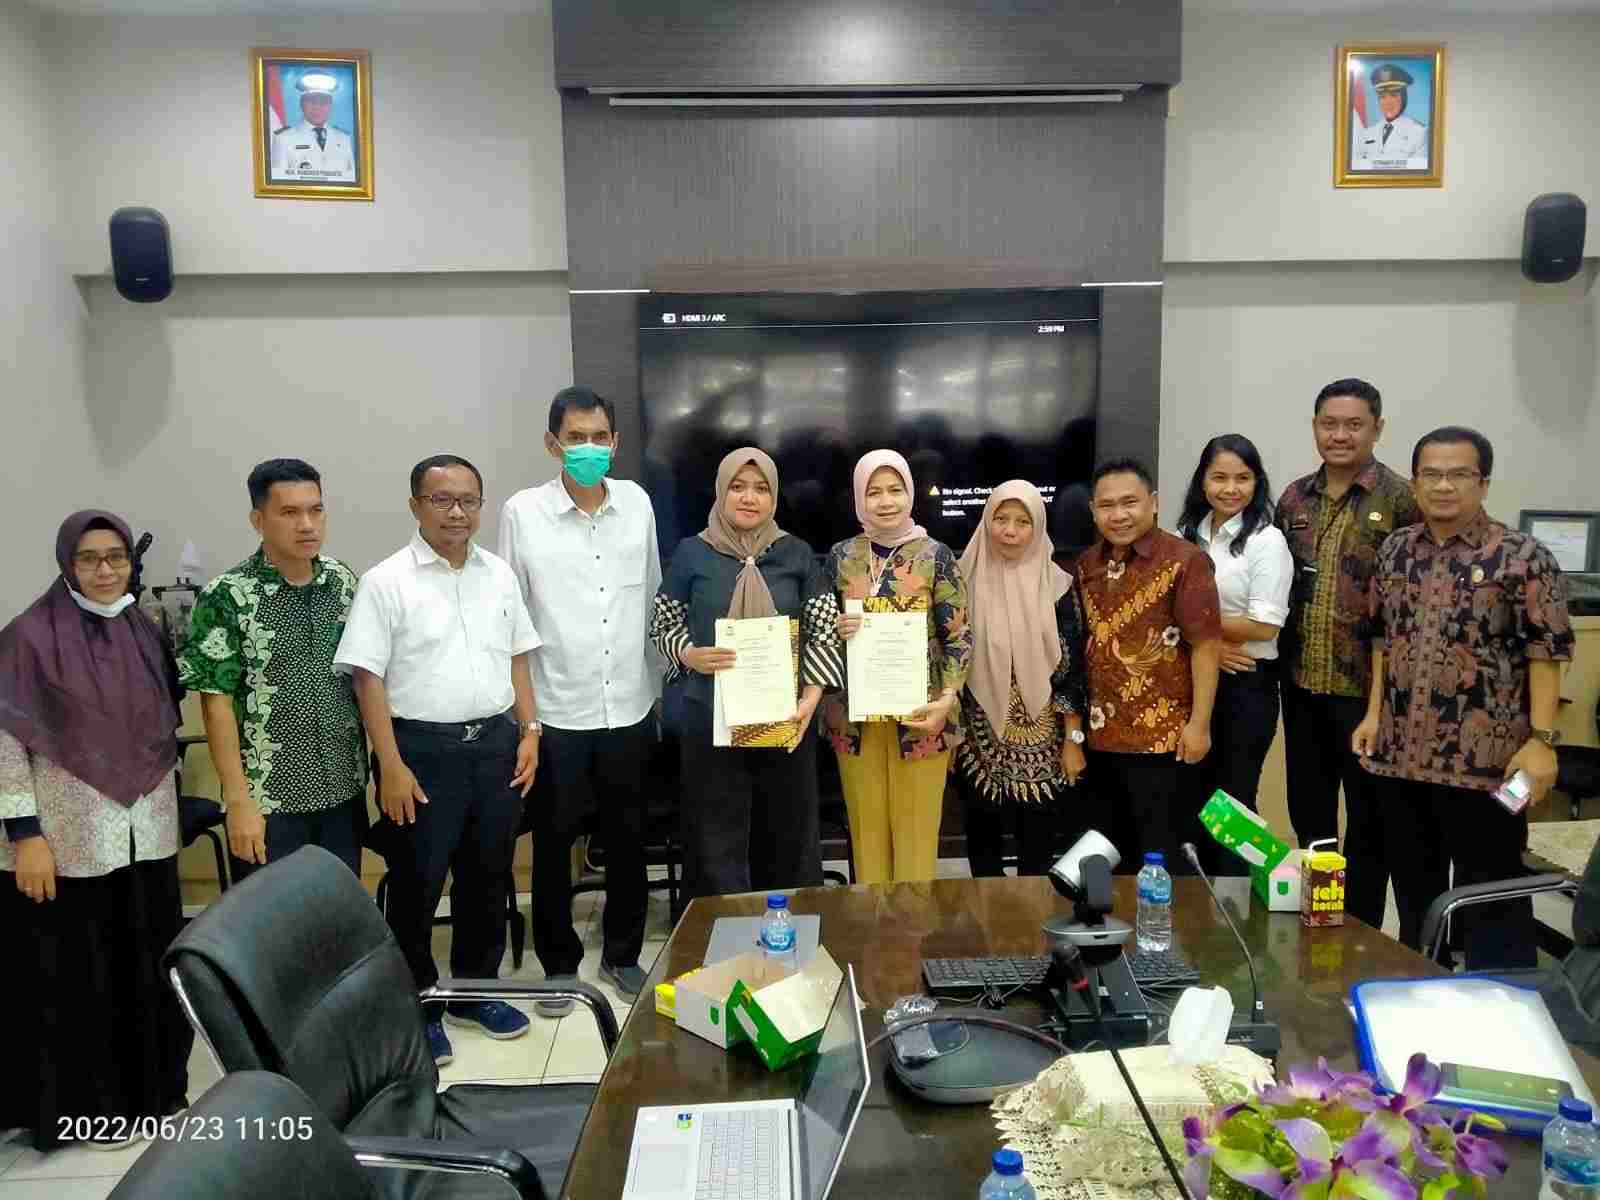 Rapat penanda tanganan kesepakatan kerja sama antara BRIN dan Dinas PU Kota Makassar yang bertempat di Ruang Rapat Kepala Dinas PU Kota Makassar, sekitar jam 10.00 sampai selesai, Kamis (23/06/2022).